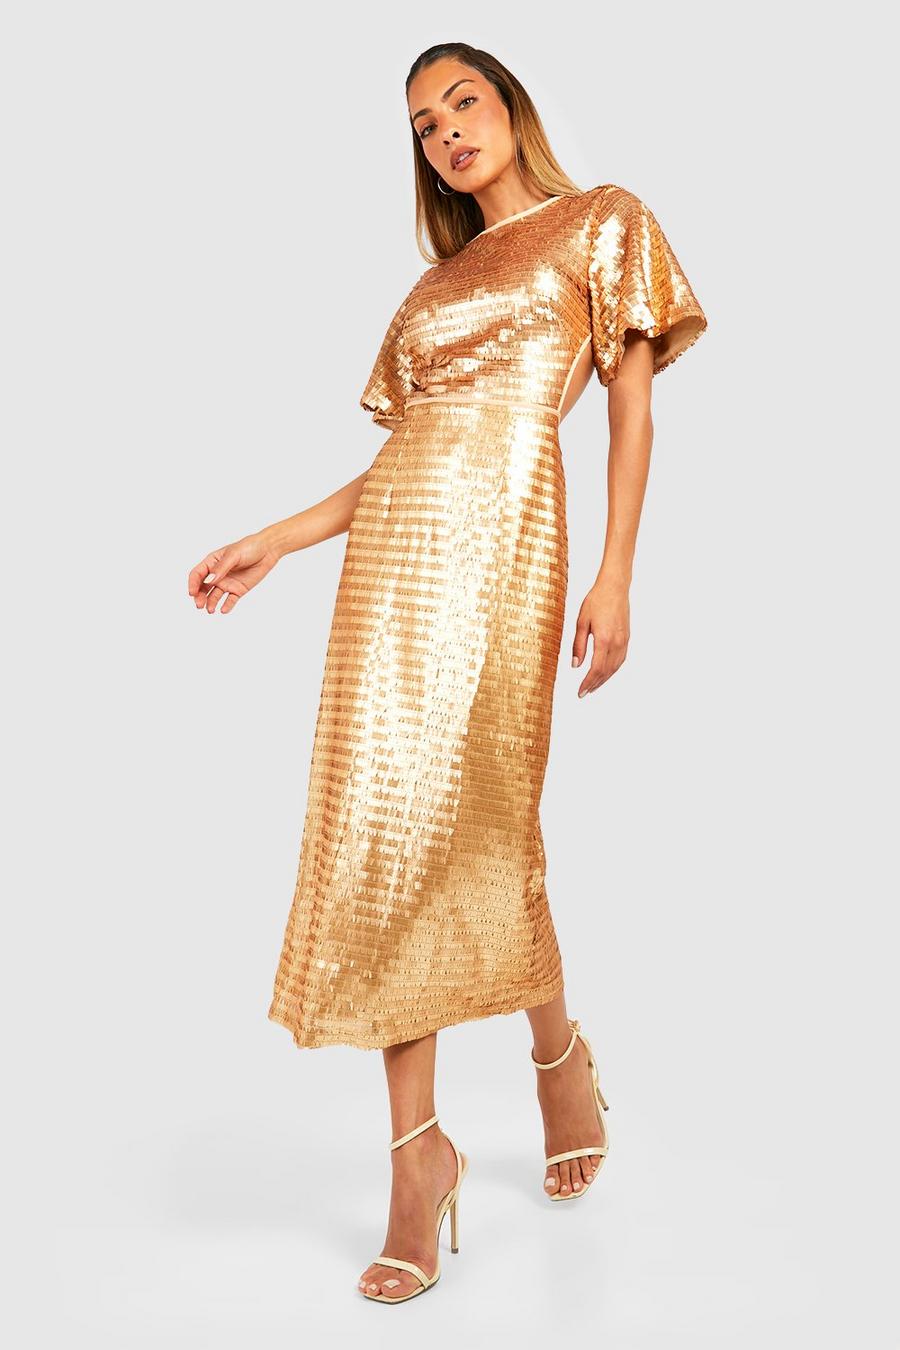 Gold שמלת מידי למסיבה עם שרוולי מלאך, פייטים וחיתוך